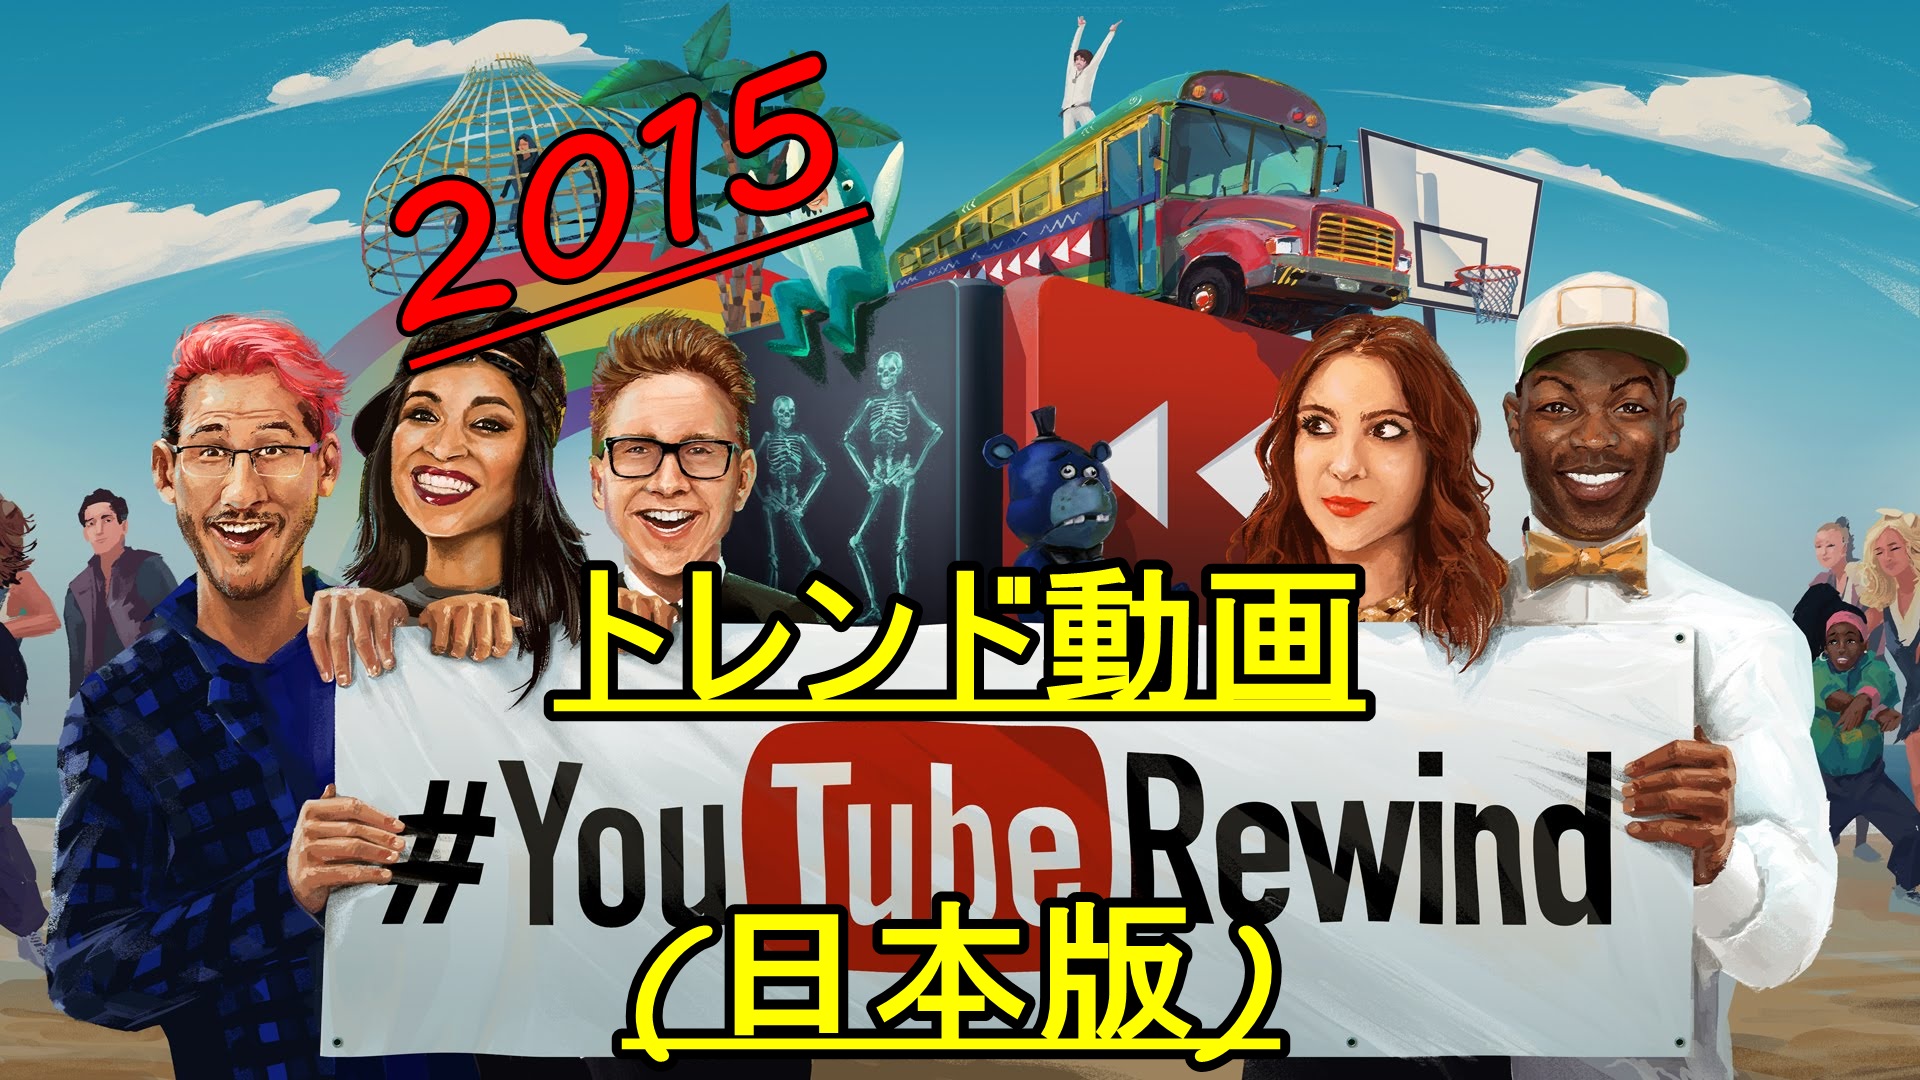 2015年日本で最も再生されたYouTuber動画ランキング!栄えある一位は…?